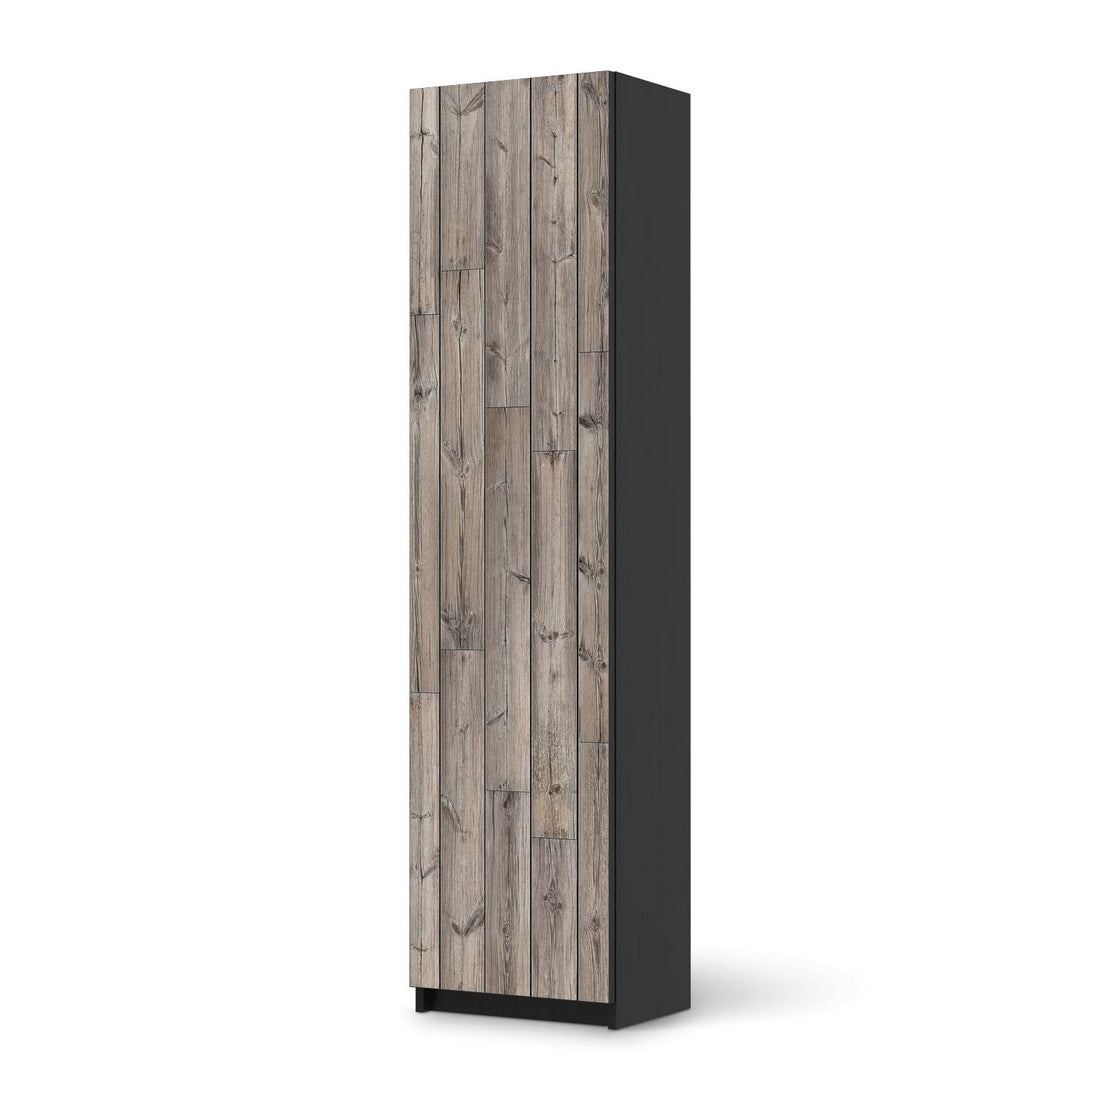 Möbelfolie Dark washed - IKEA Pax Schrank 201 cm Höhe - 1 Tür - schwarz